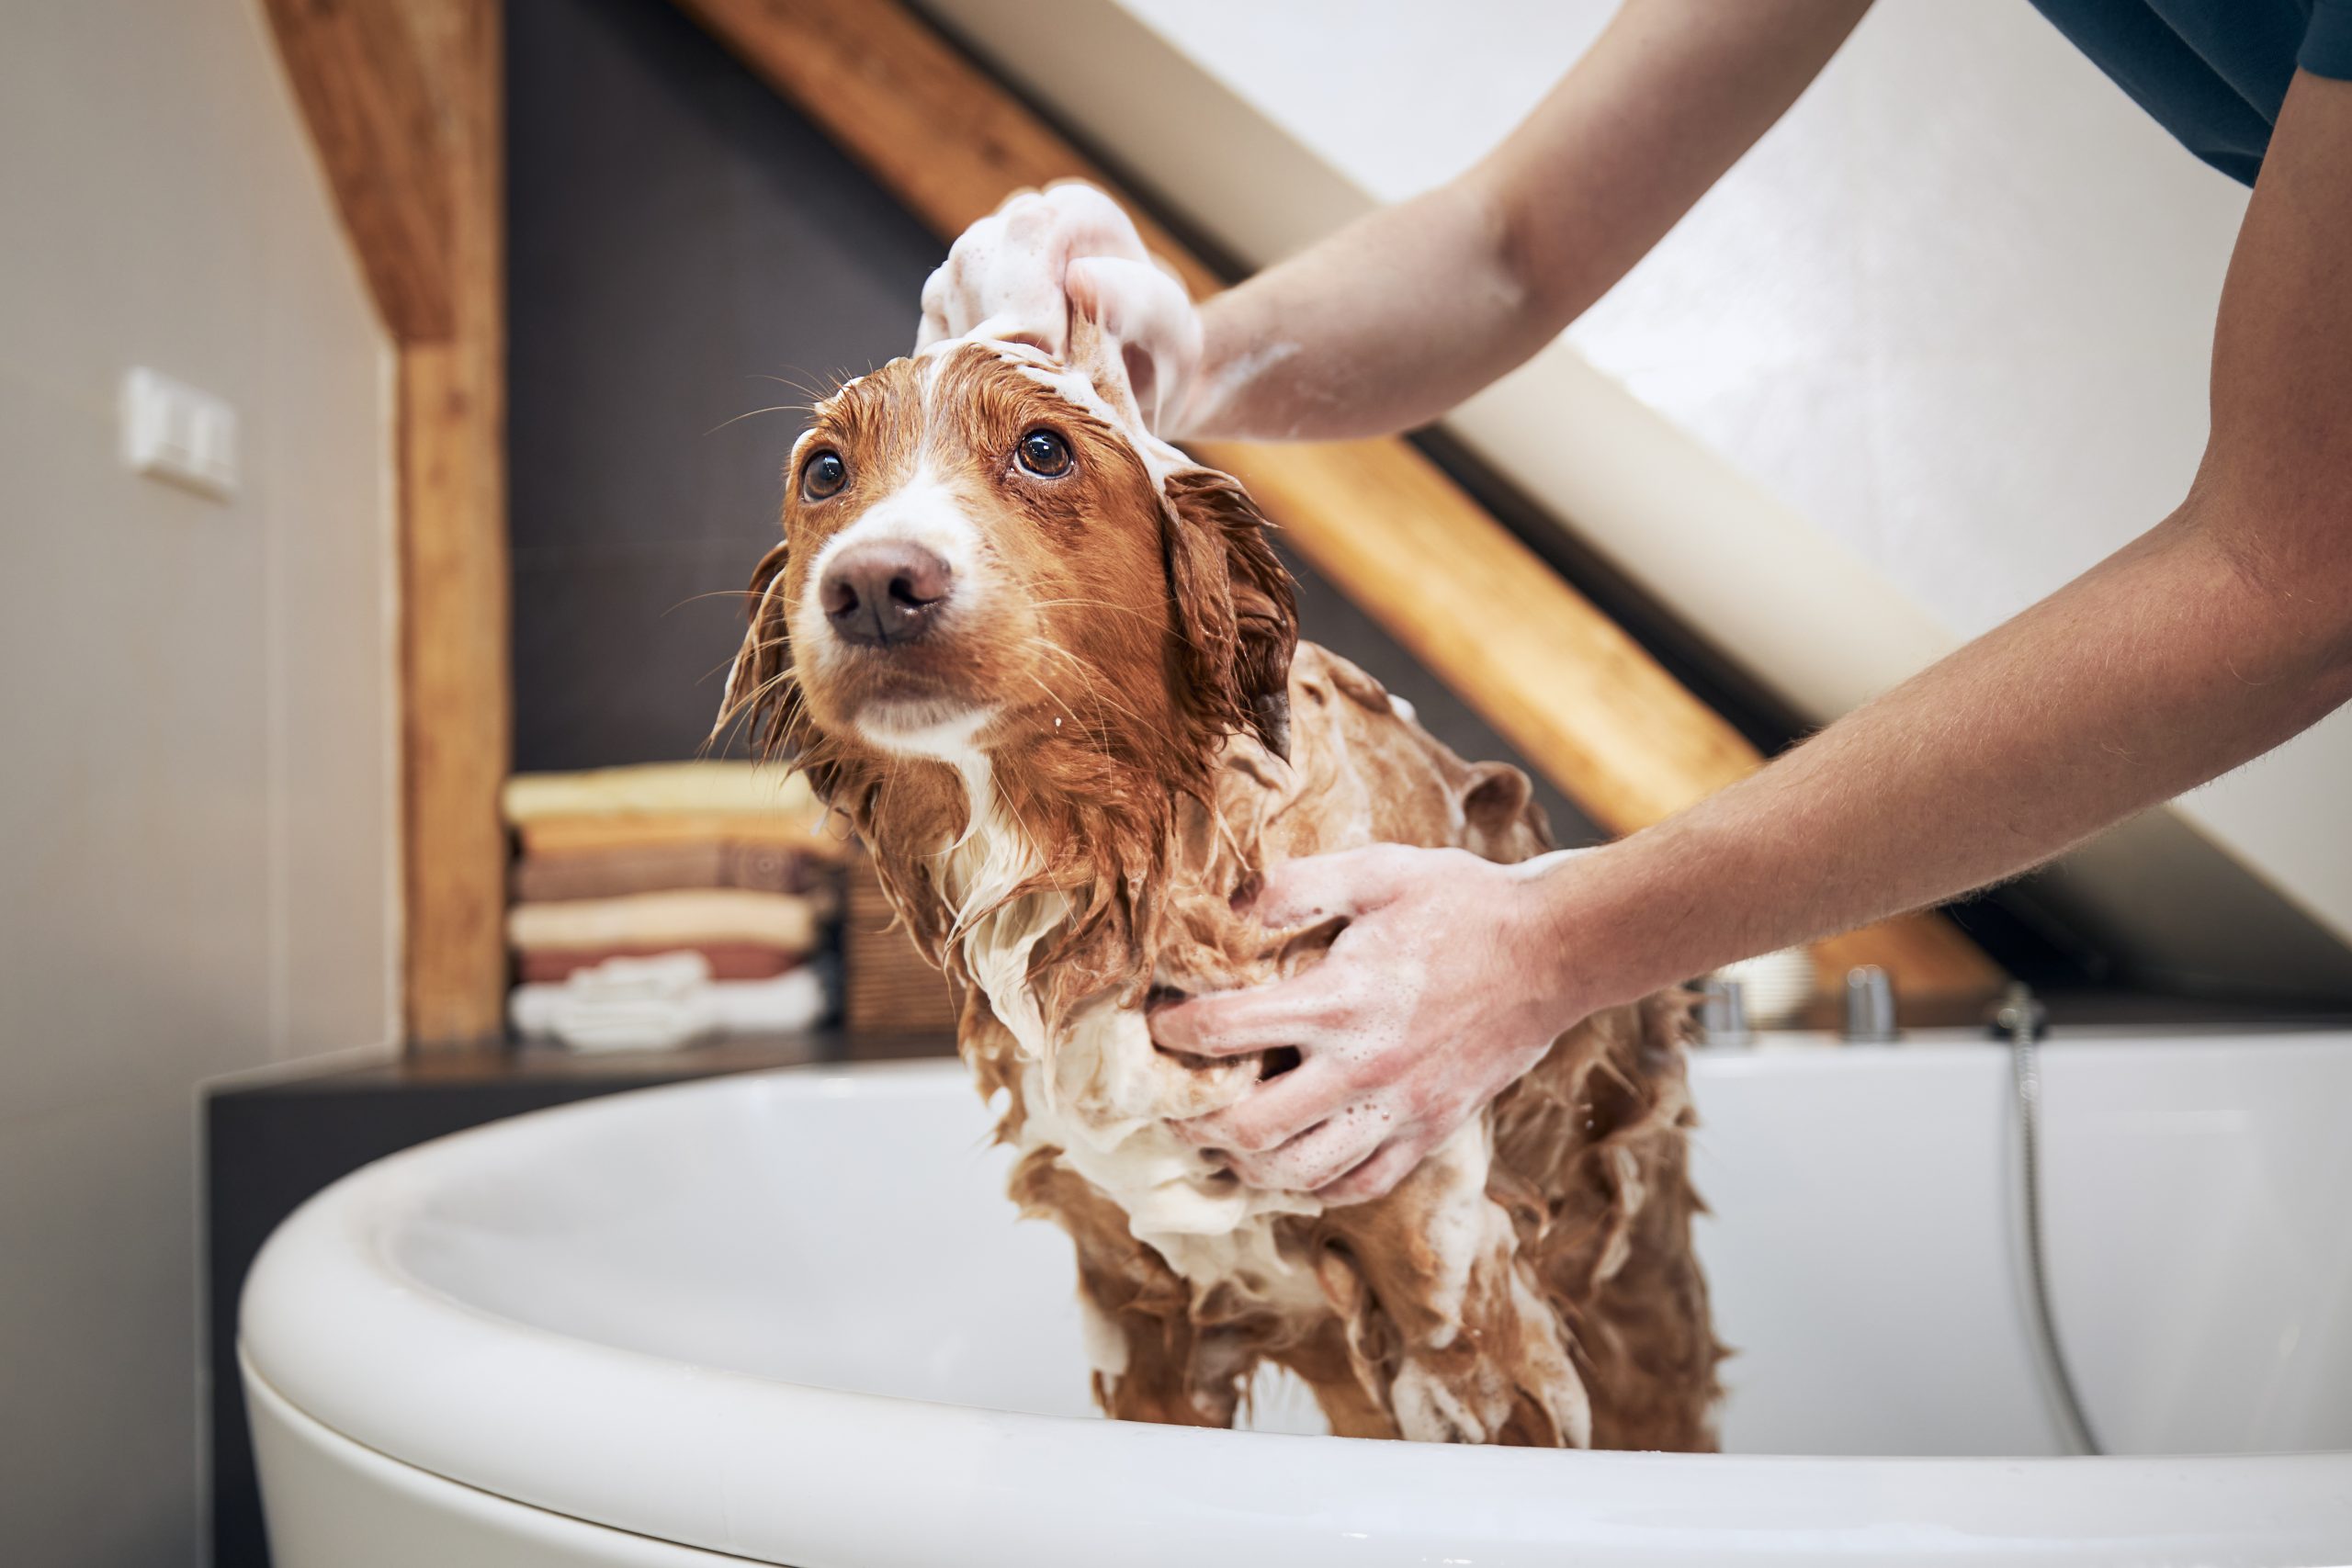 dog taking bath at home 2022 05 23 23 14 53 utc scaled